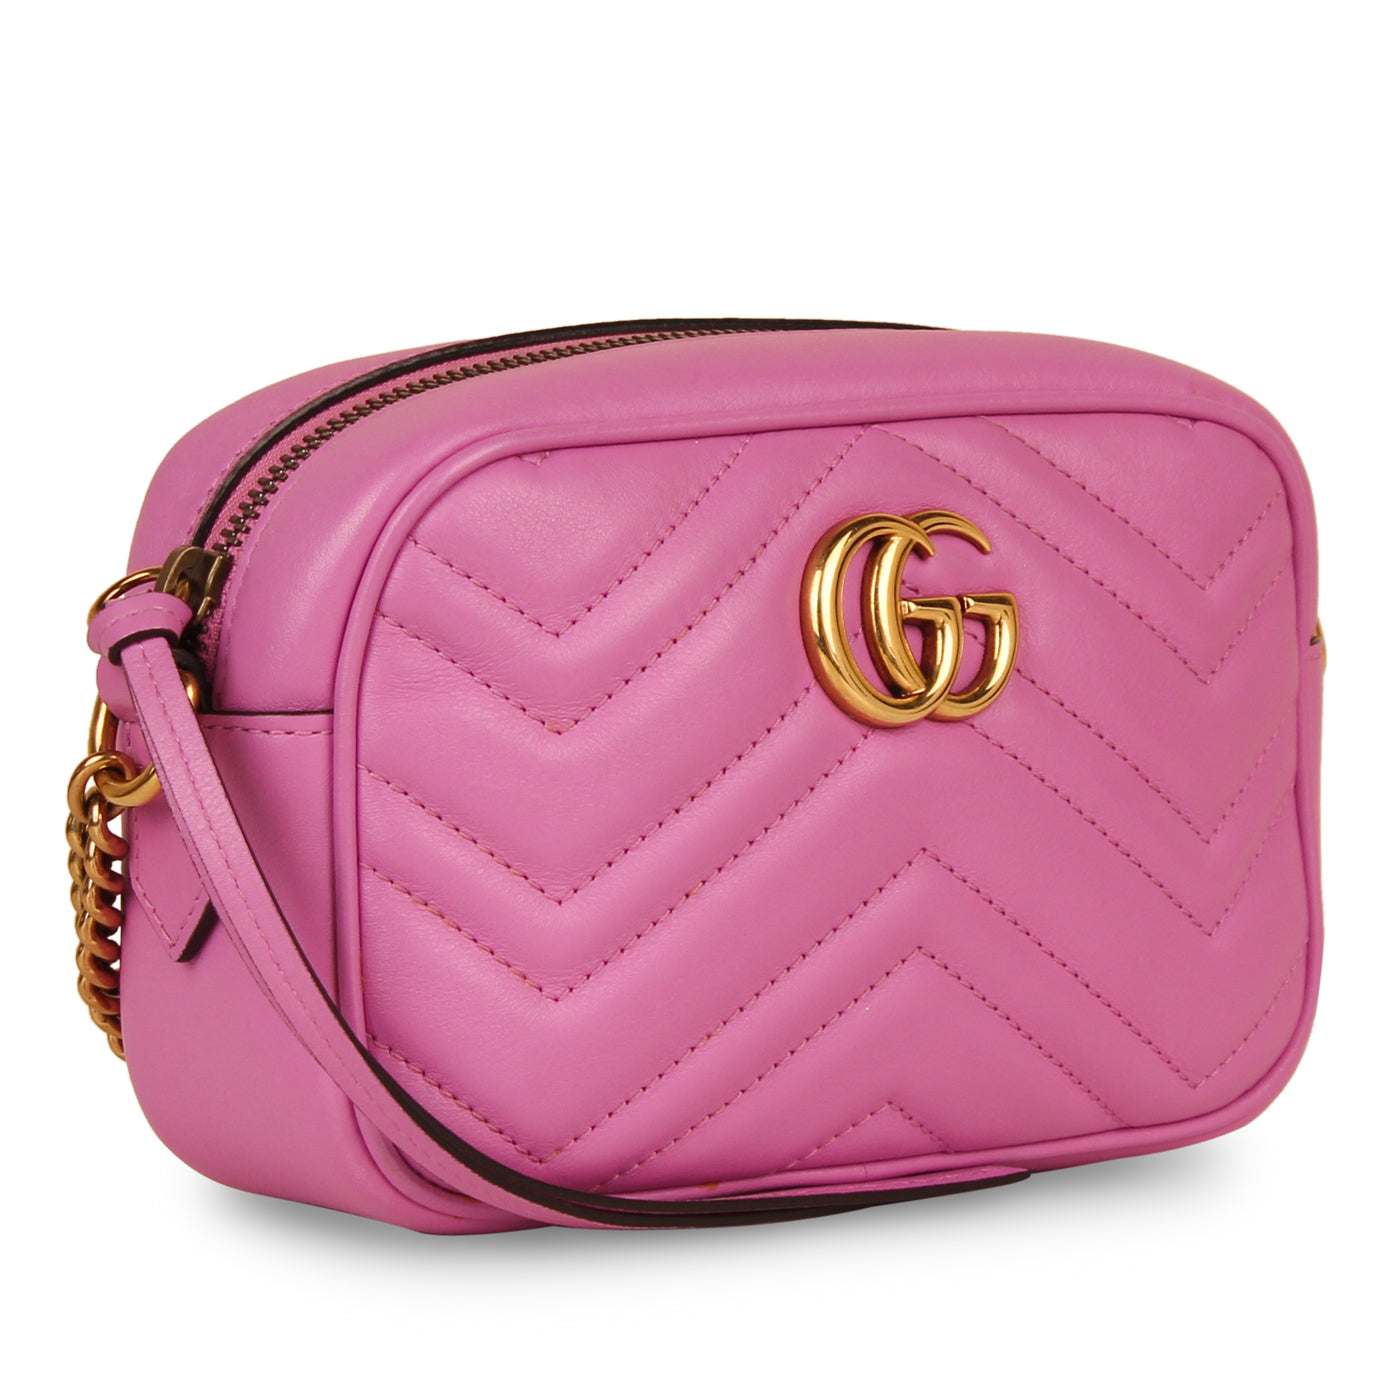 Gucci Ophidia Series Small Handbag Size 25x15x6 cm | Small handbags, Handbag,  Bags